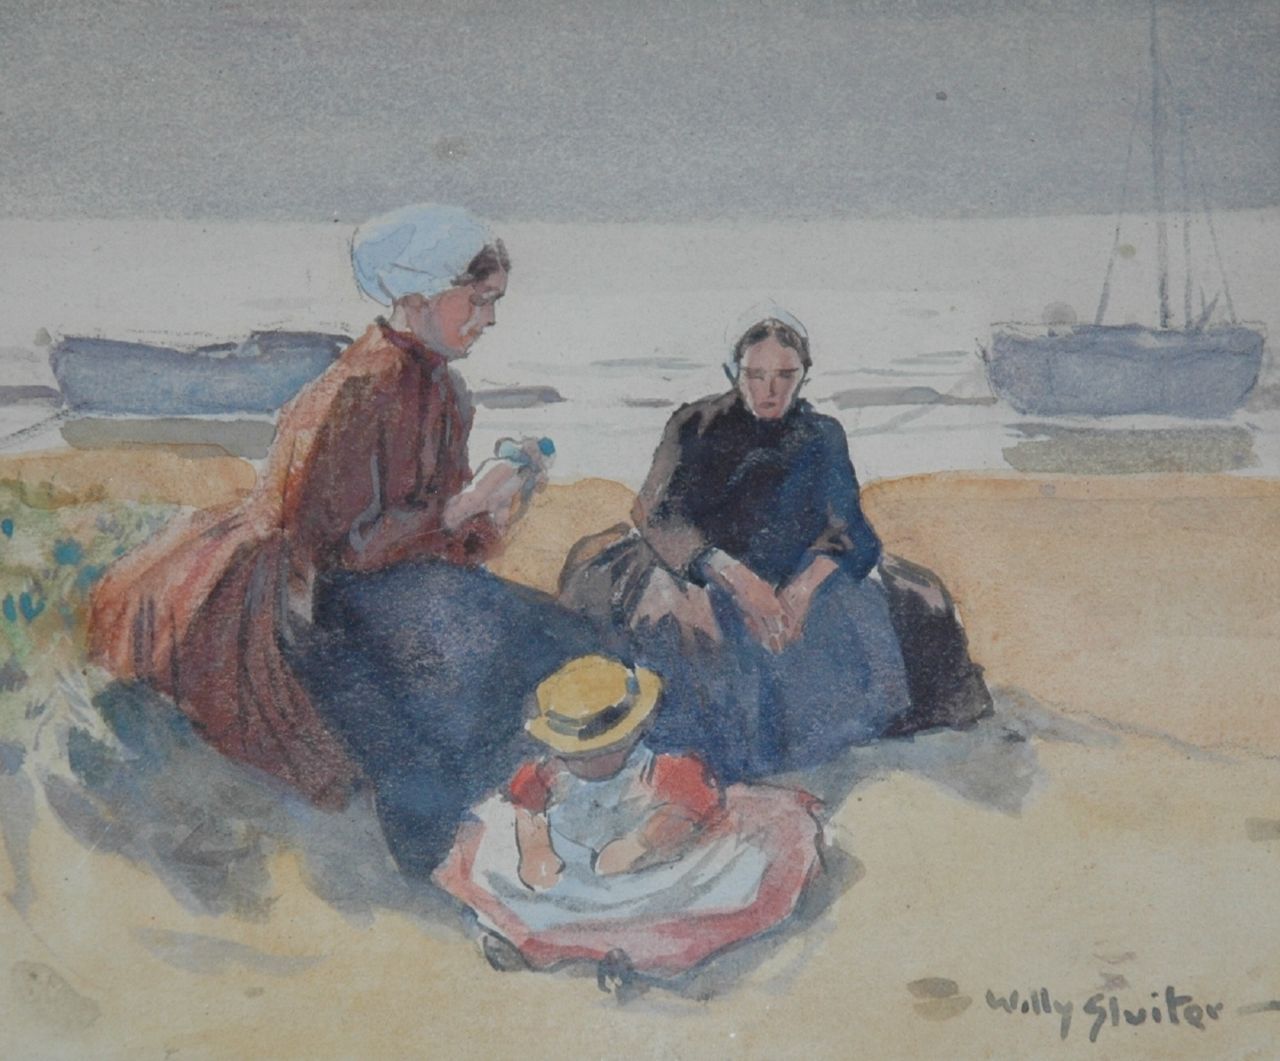 Sluiter J.W.  | Jan Willem 'Willy' Sluiter, Vissersvrouwen met kindje in de duinen, aquarel op papier 11,0 x 13,5 cm, gesigneerd rechtsonder